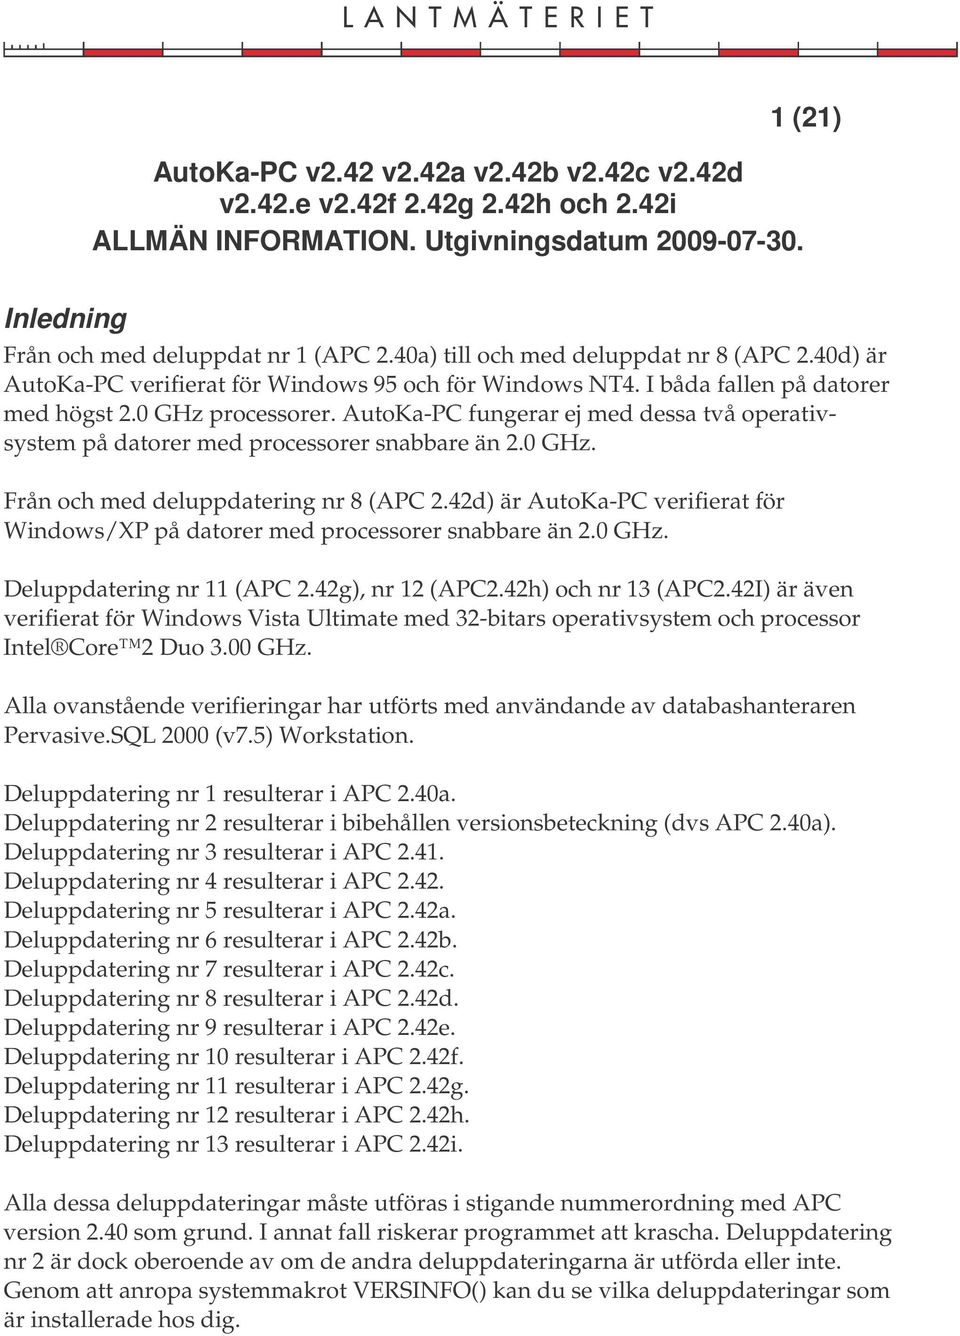 42d) är AutoKa-PC verifierat för Windows/XP på datorer med processorer snabbare än 2.0 GHz. Deluppdatering nr 11 (APC 2.42g), nr 12 (APC2.42h) och nr 13 (APC2.